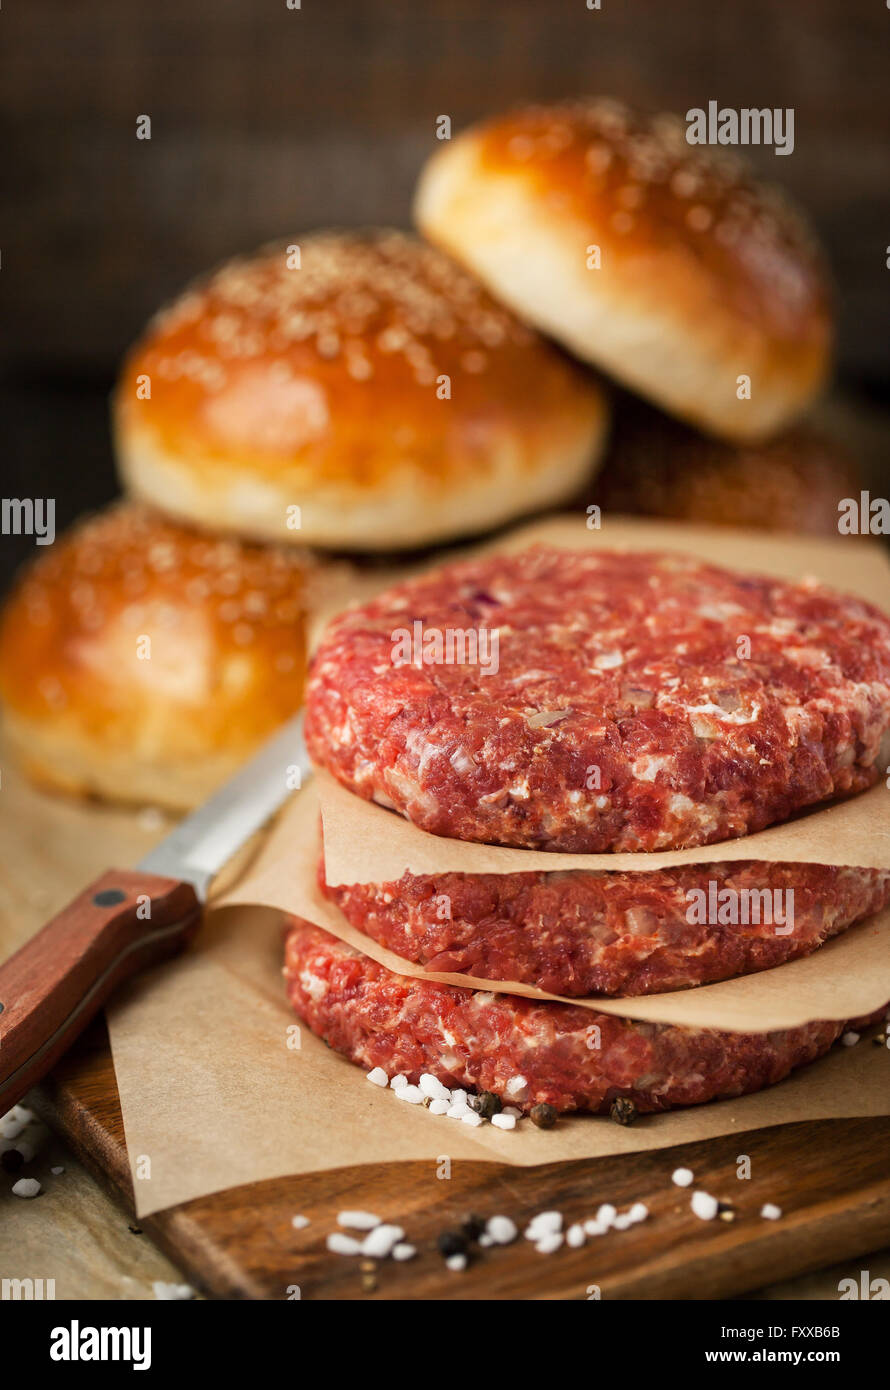 Rohen Boden Rindfleisch Fleisch Steak Schnitzel und Burger-Brötchen auf hölzernen Hintergrund, bereit für das Kochen Stockfoto